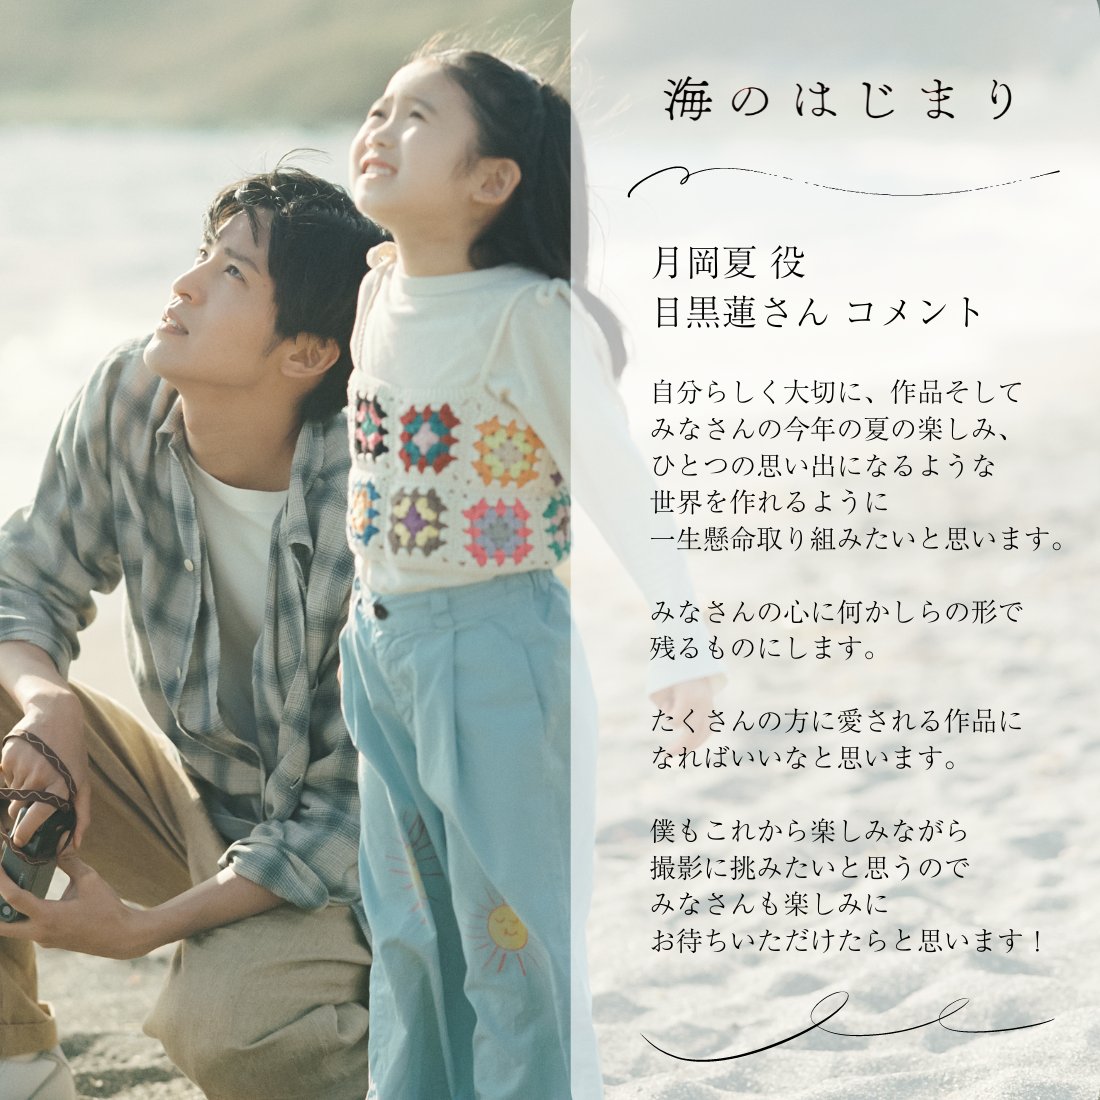 7月スタート月9ドラマ
#海のはじまり

主人公・月岡夏を演じる #目黒蓮 さん

皆さんへのメッセージをお届けします